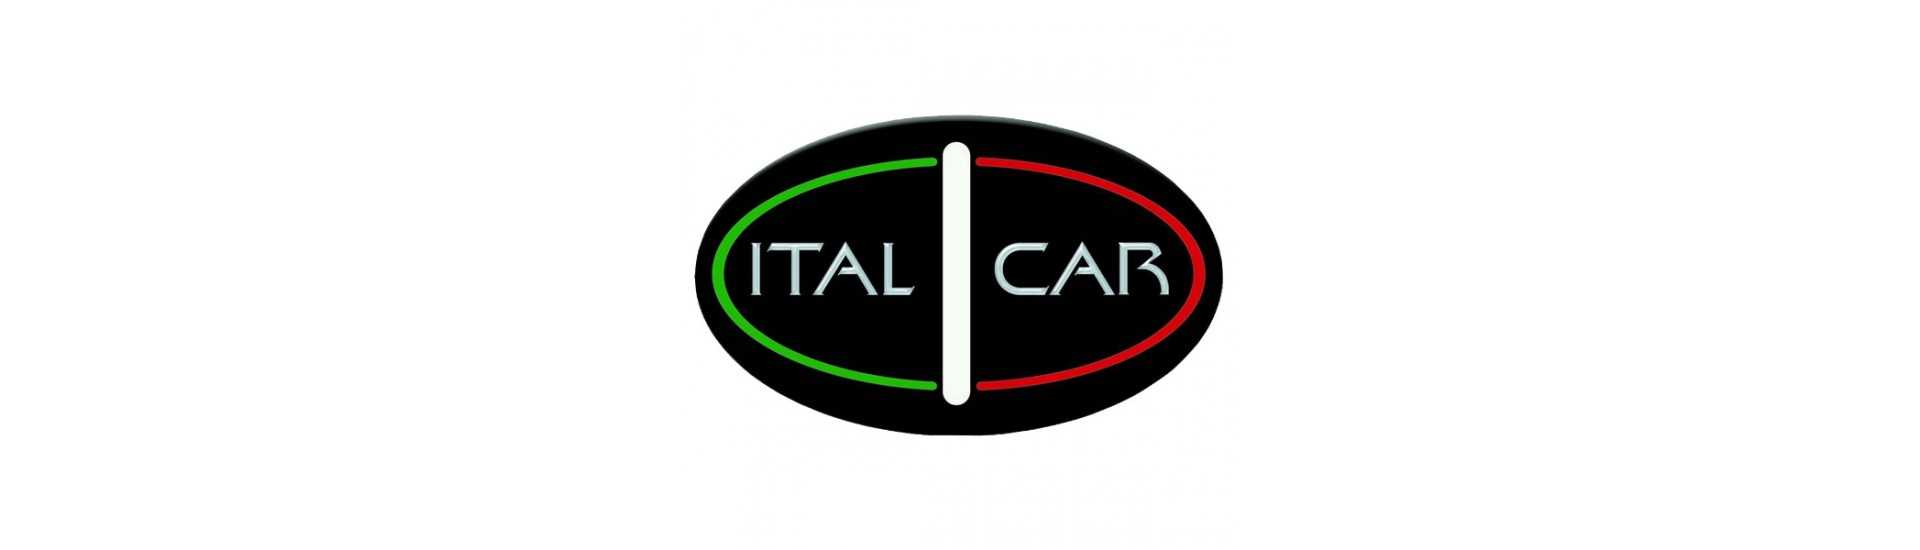 Focul din spate la cel mai bun preț pentru o mașină fără permis Italcar